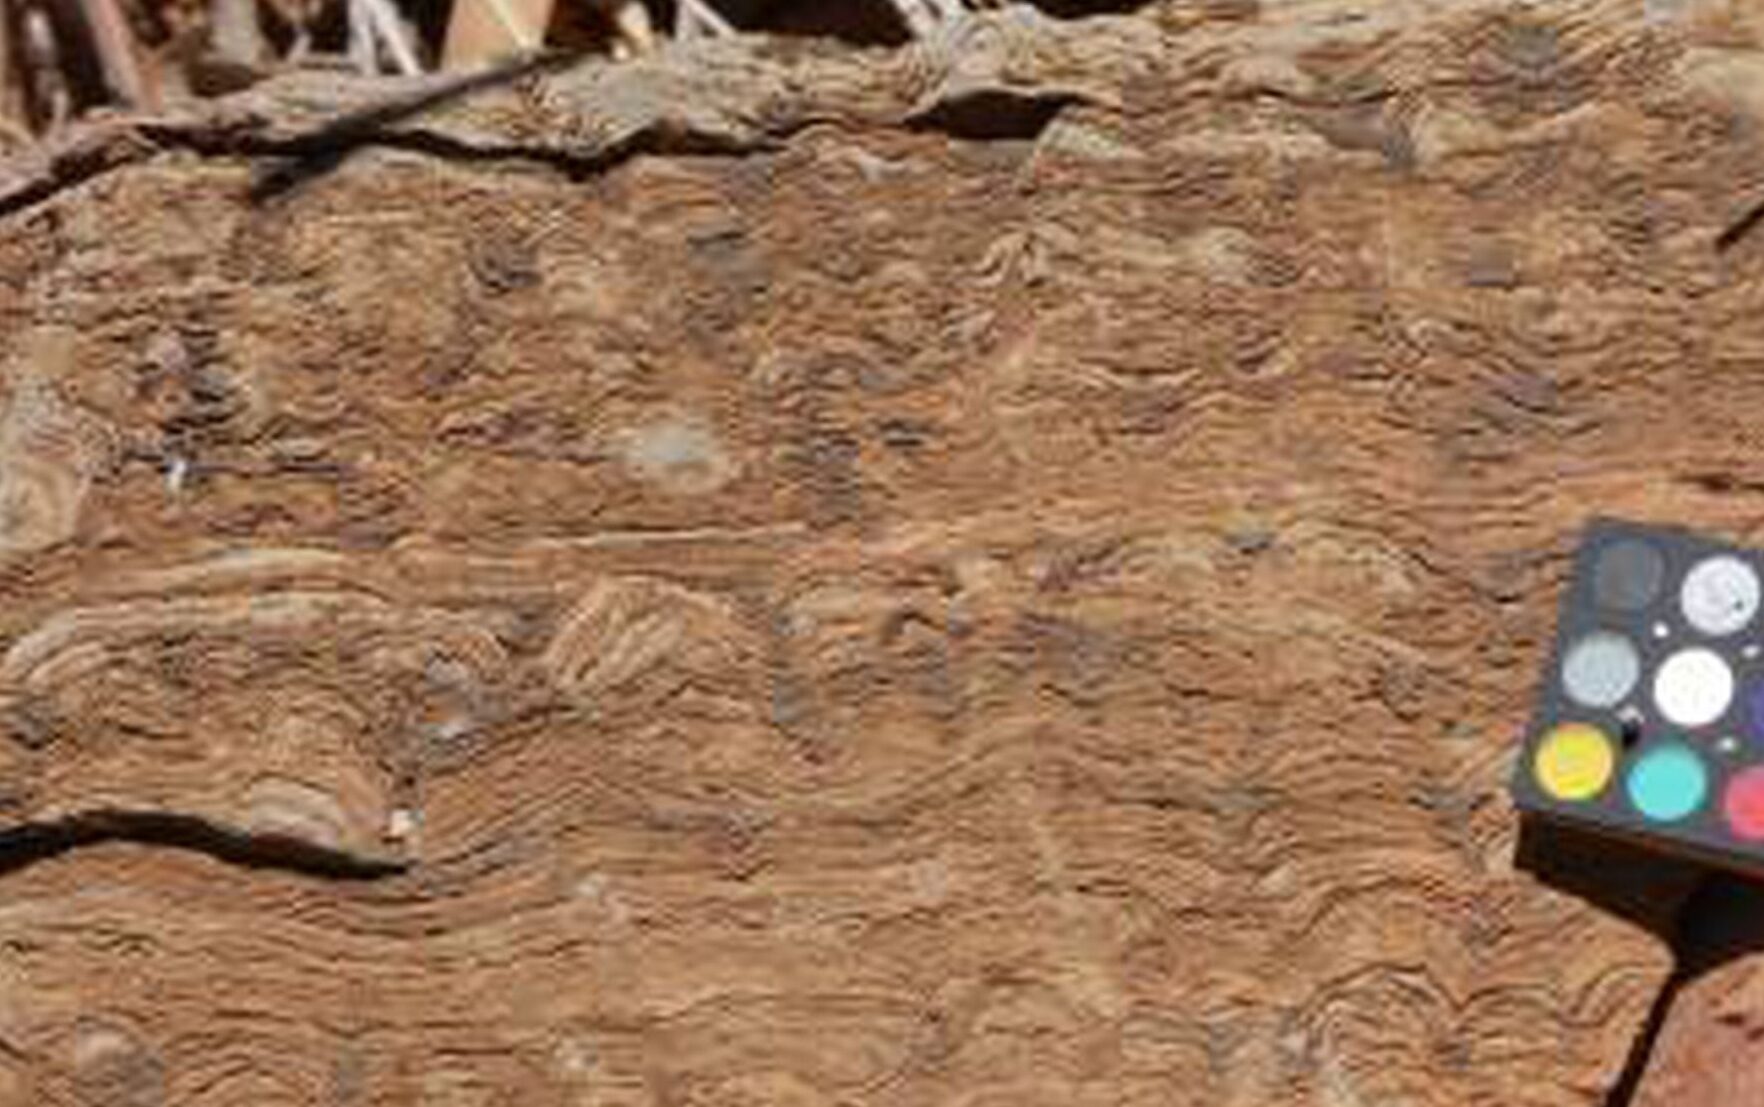 El fósil más antiguo conocido: una ventana al pasado remoto de la Tierra